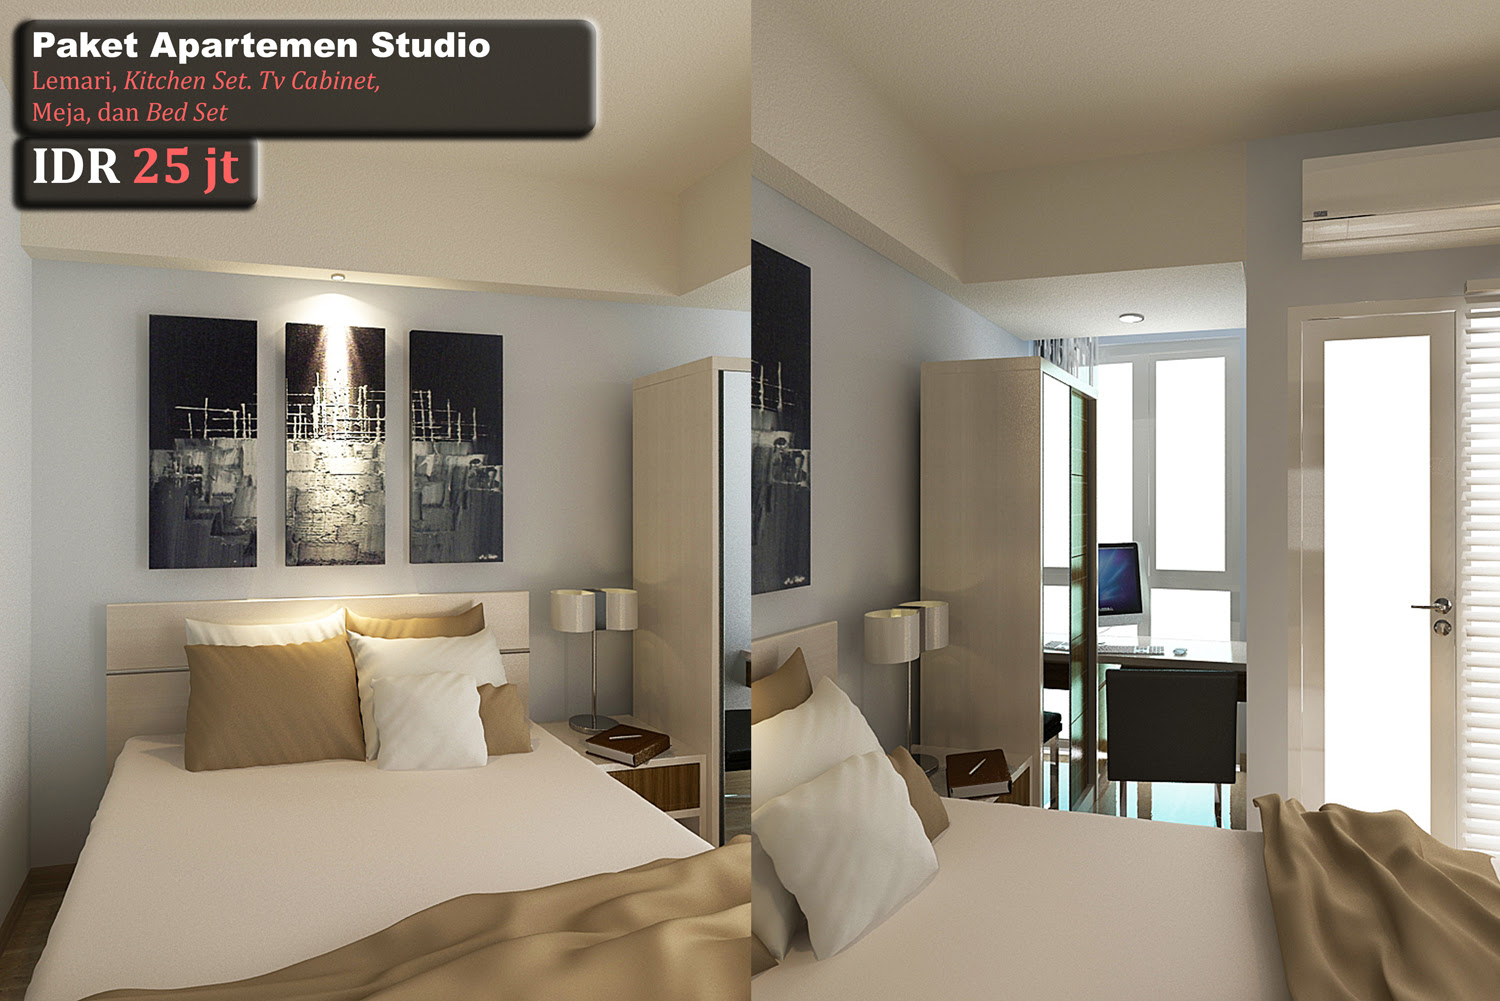 gambar interior design apartemen minimalis interior rumah